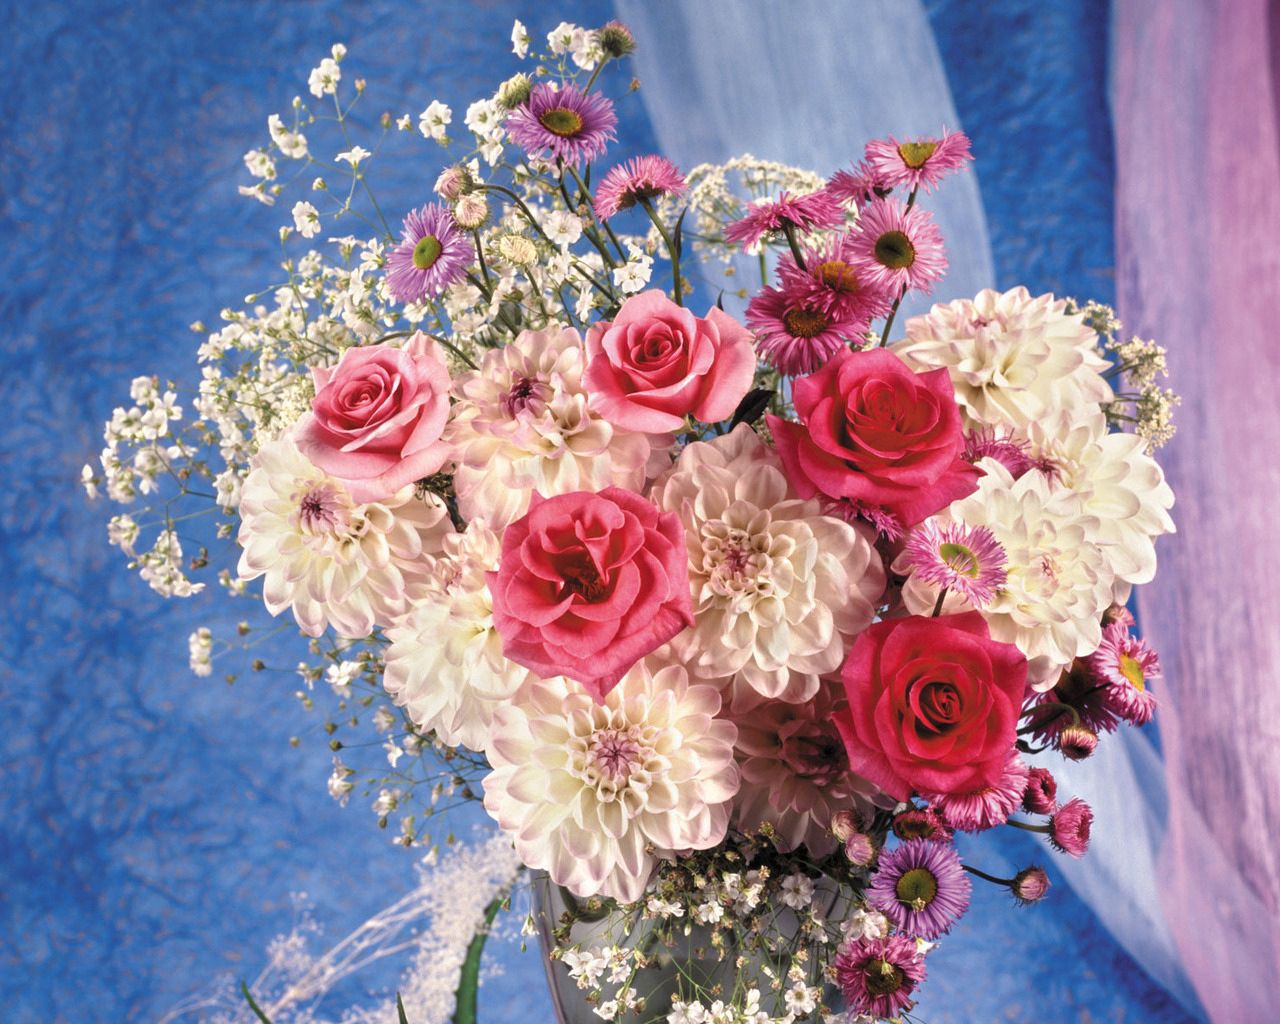 158149 Заставки и Обои Шикарно на телефон. Скачать цветы, ваза, розы, оформление картинки бесплатно